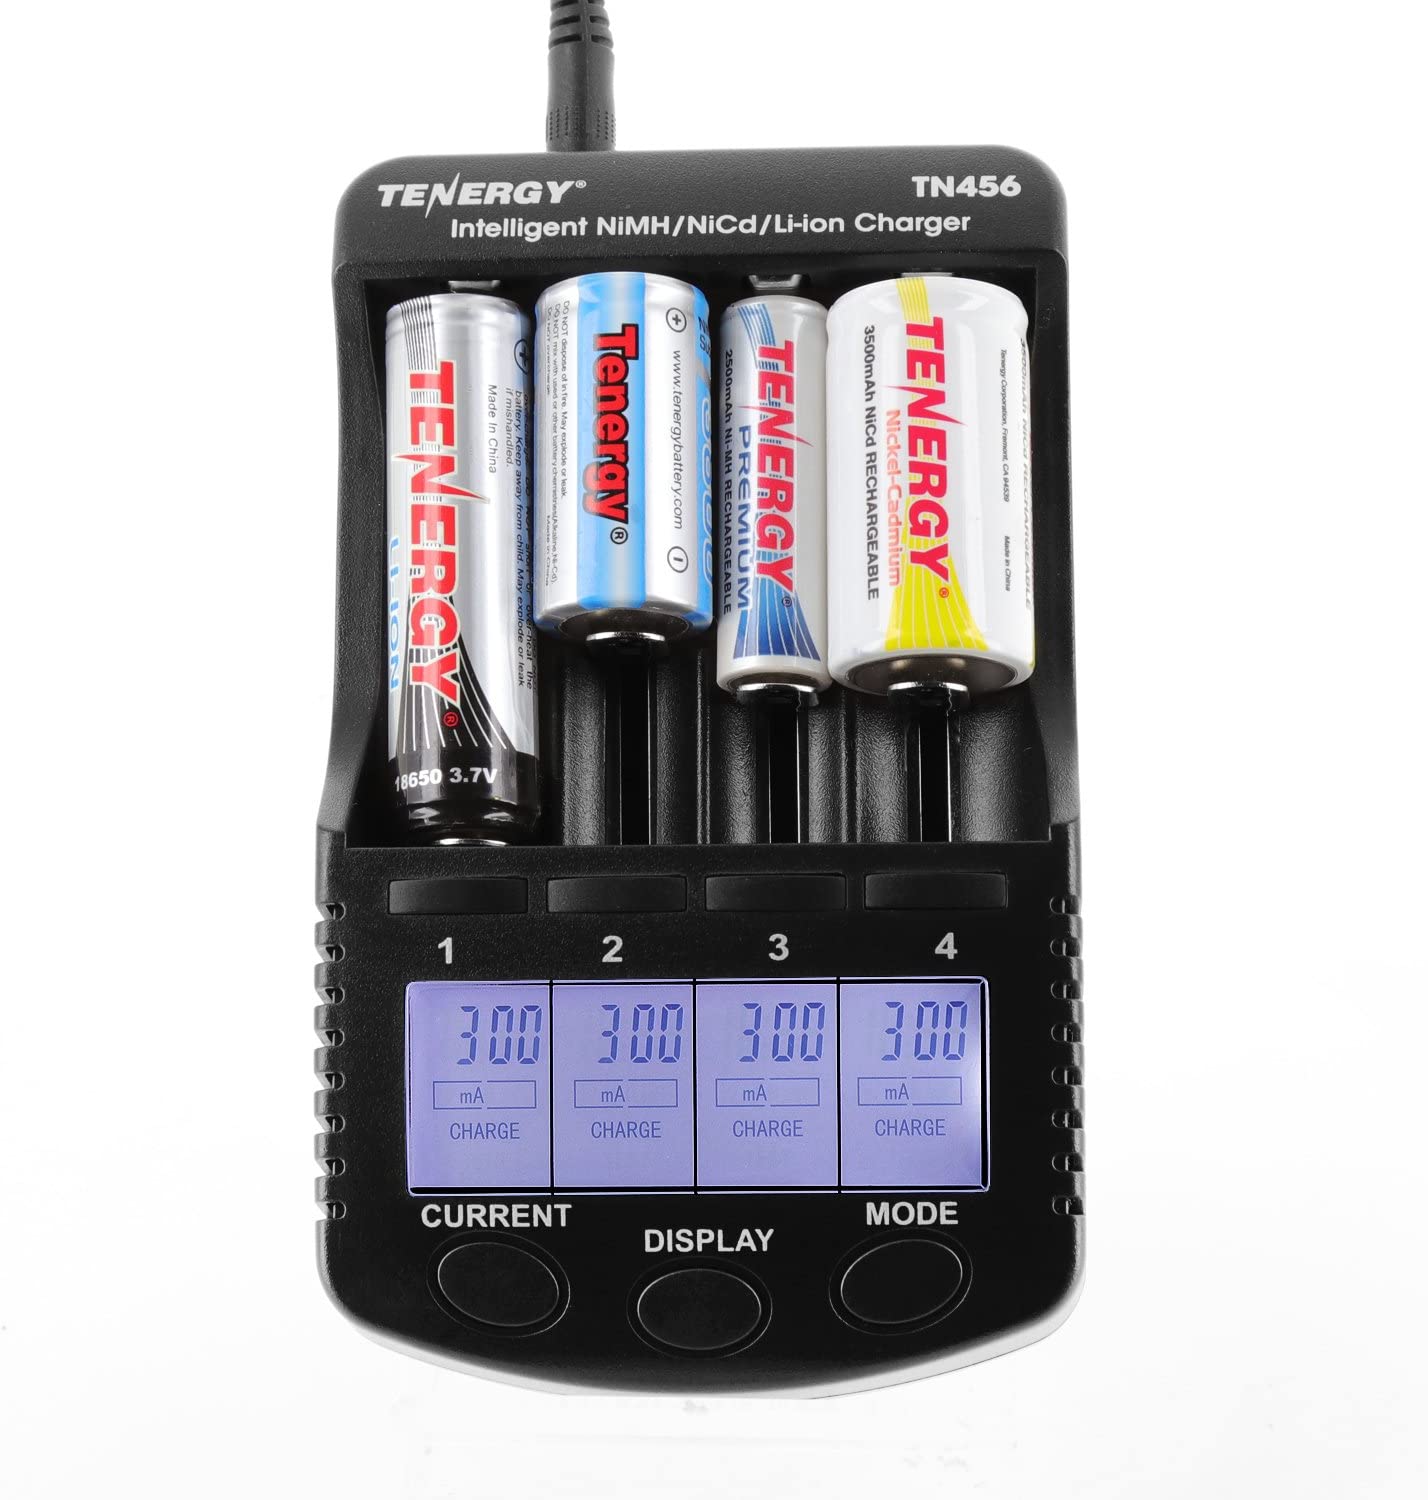 [3美國直購] Tenergy TN456 通用 AA AAA 電池 充電器 Battery Charger Tester (BC700可參考)